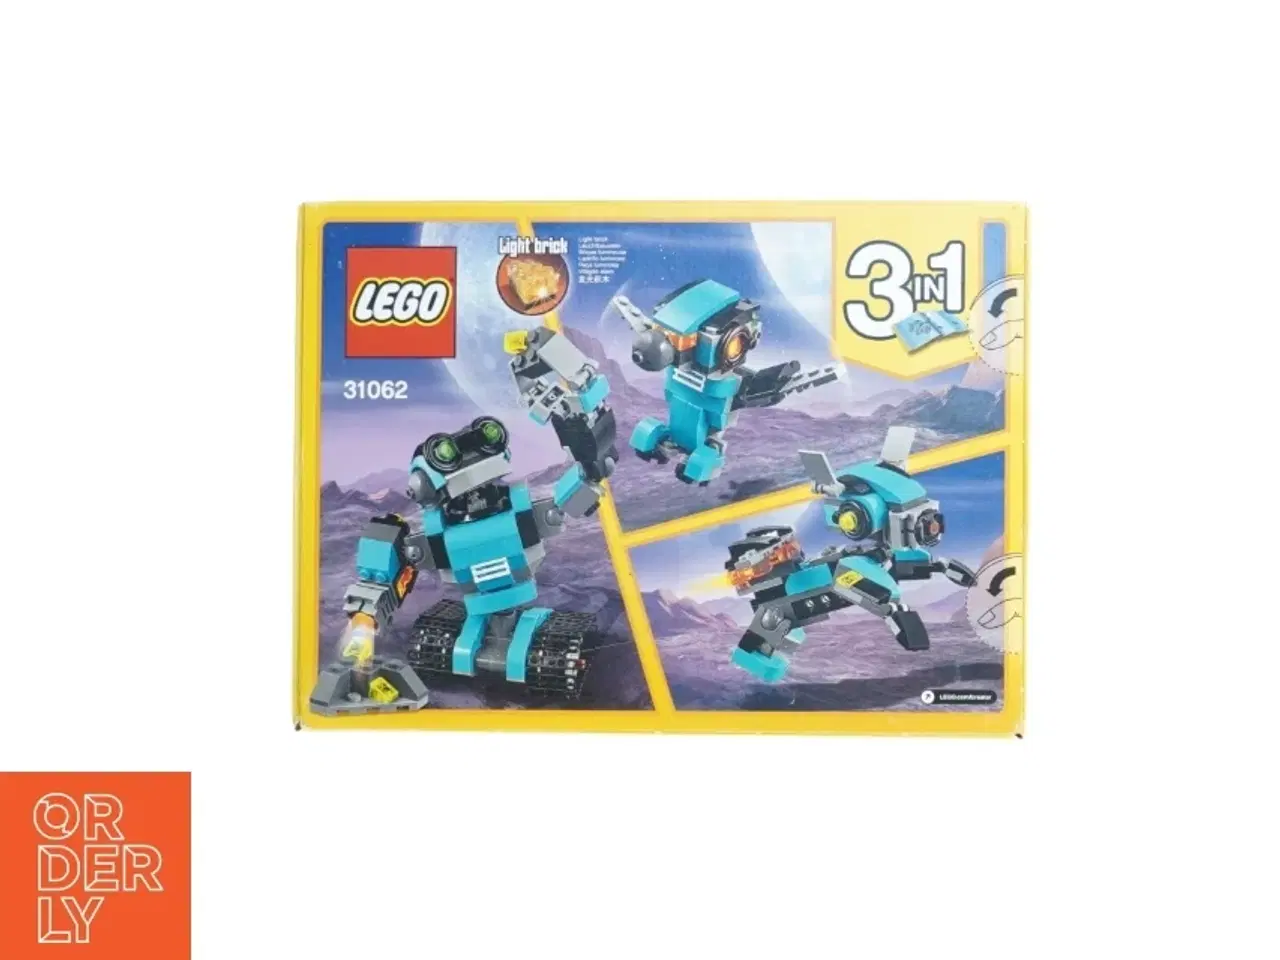 Billede 2 - Lego creator (tre i en) - model 31062 (Uåbnet) fra Lego (str. 26 x 19 x 5 cm)